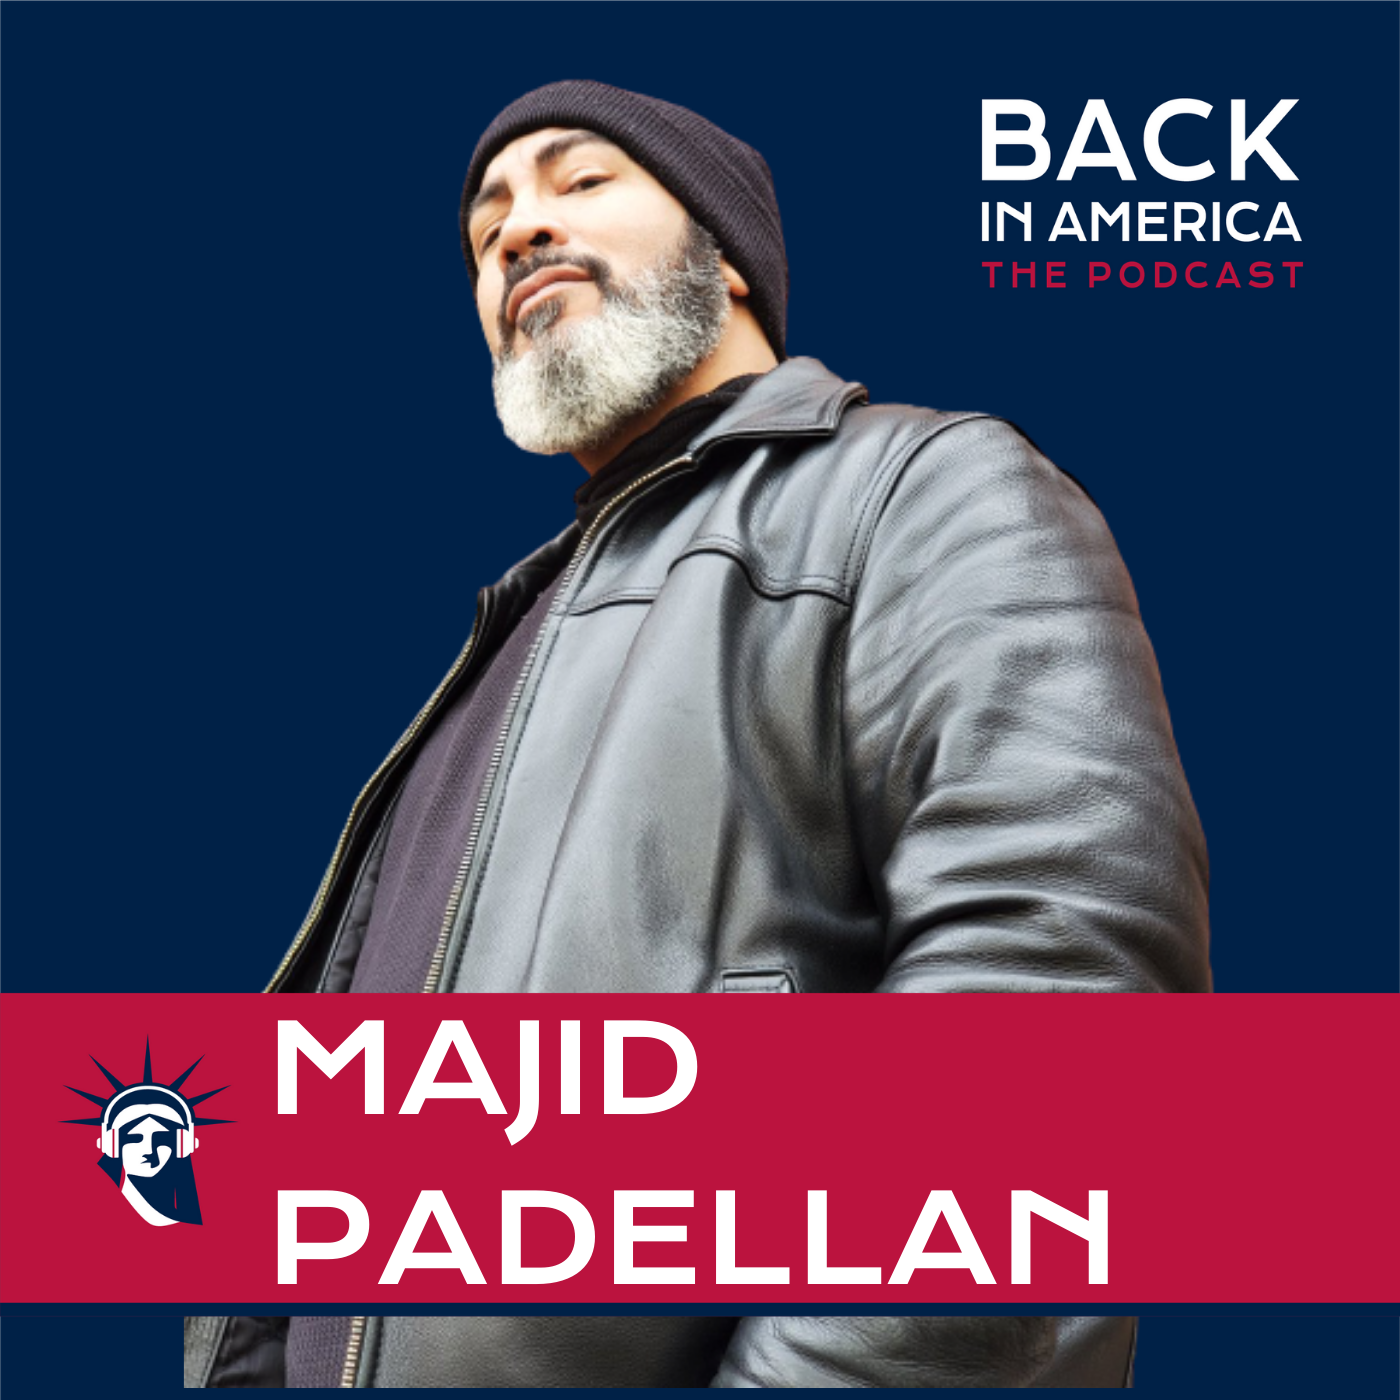 majid padellan podcast back in america